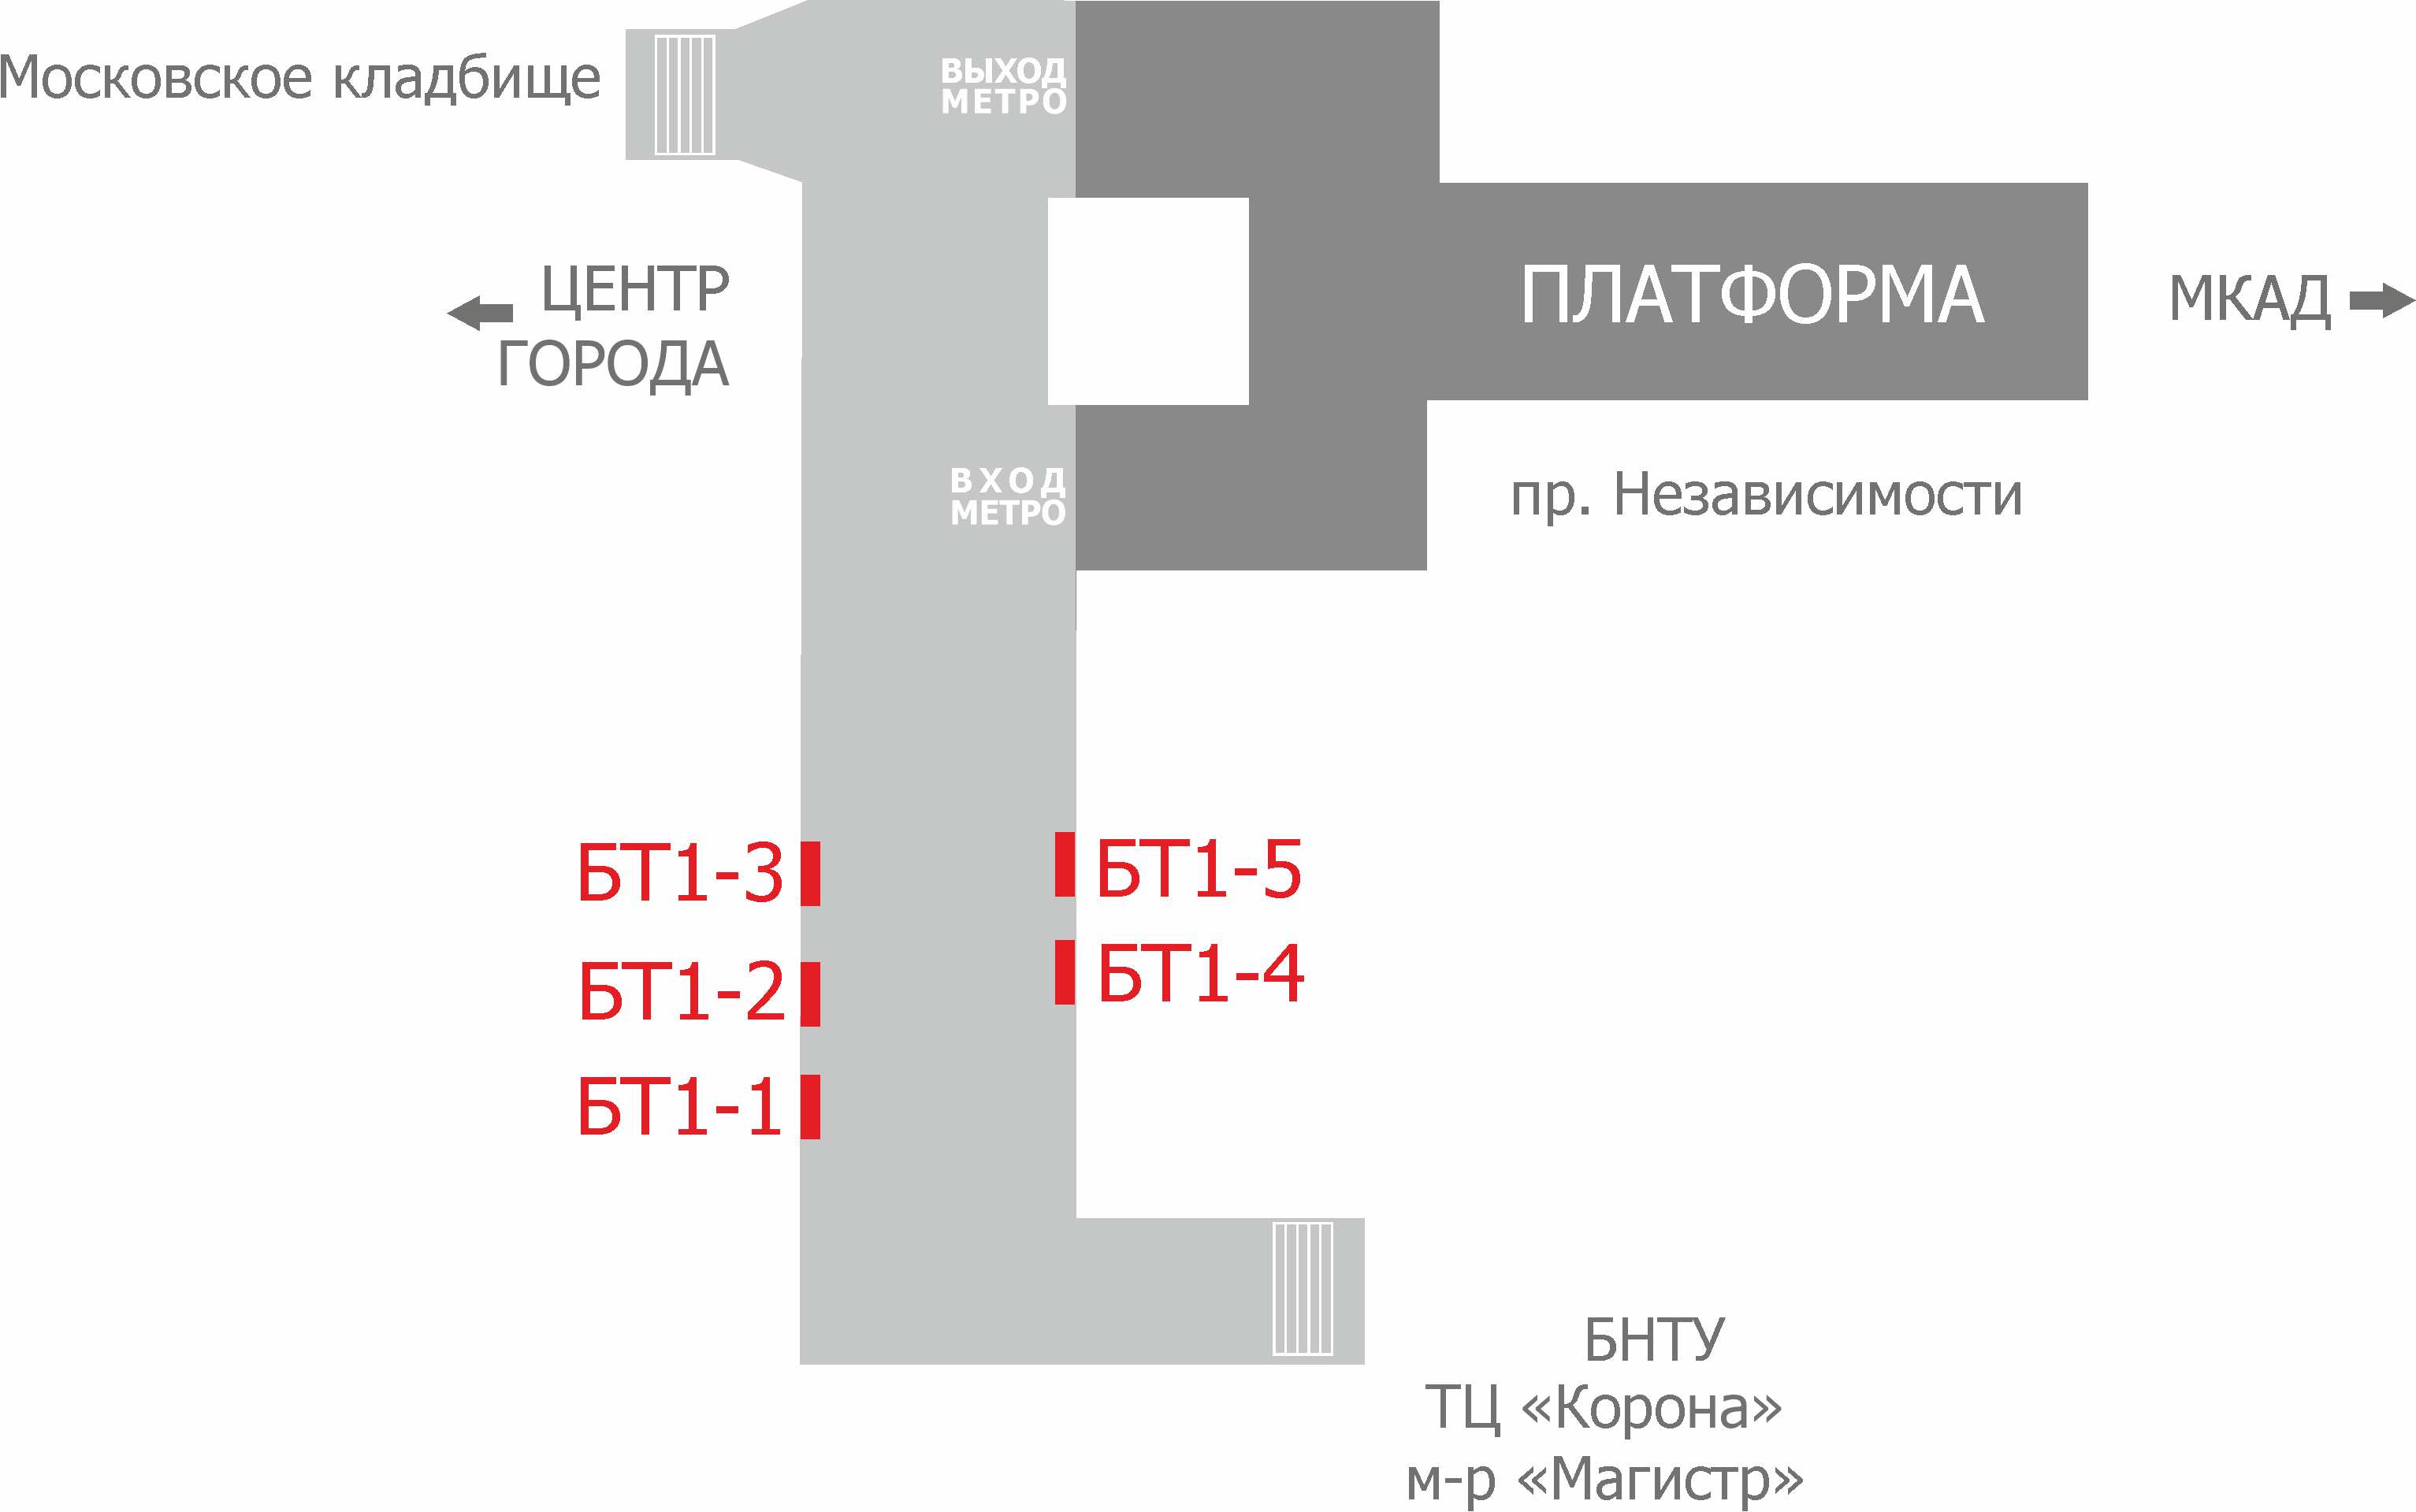 Схема расположения рекламных мест в переходе метро ст.м Борисовский тракт reklama-on.by